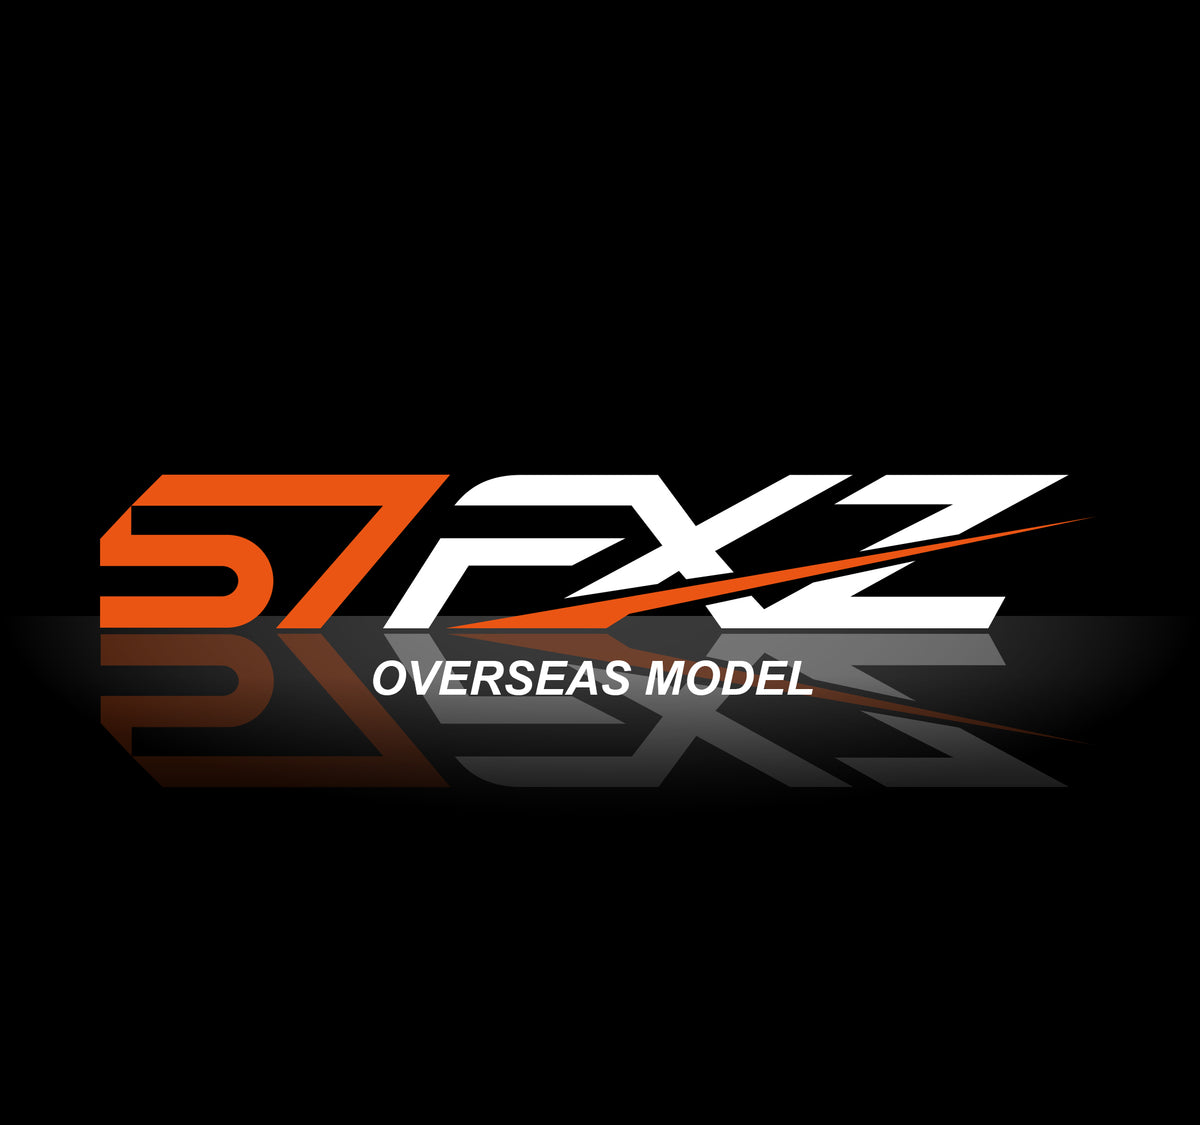 RAYS GRAM LIGHT 57FXZ Overseas Model - On The Run Motorsports